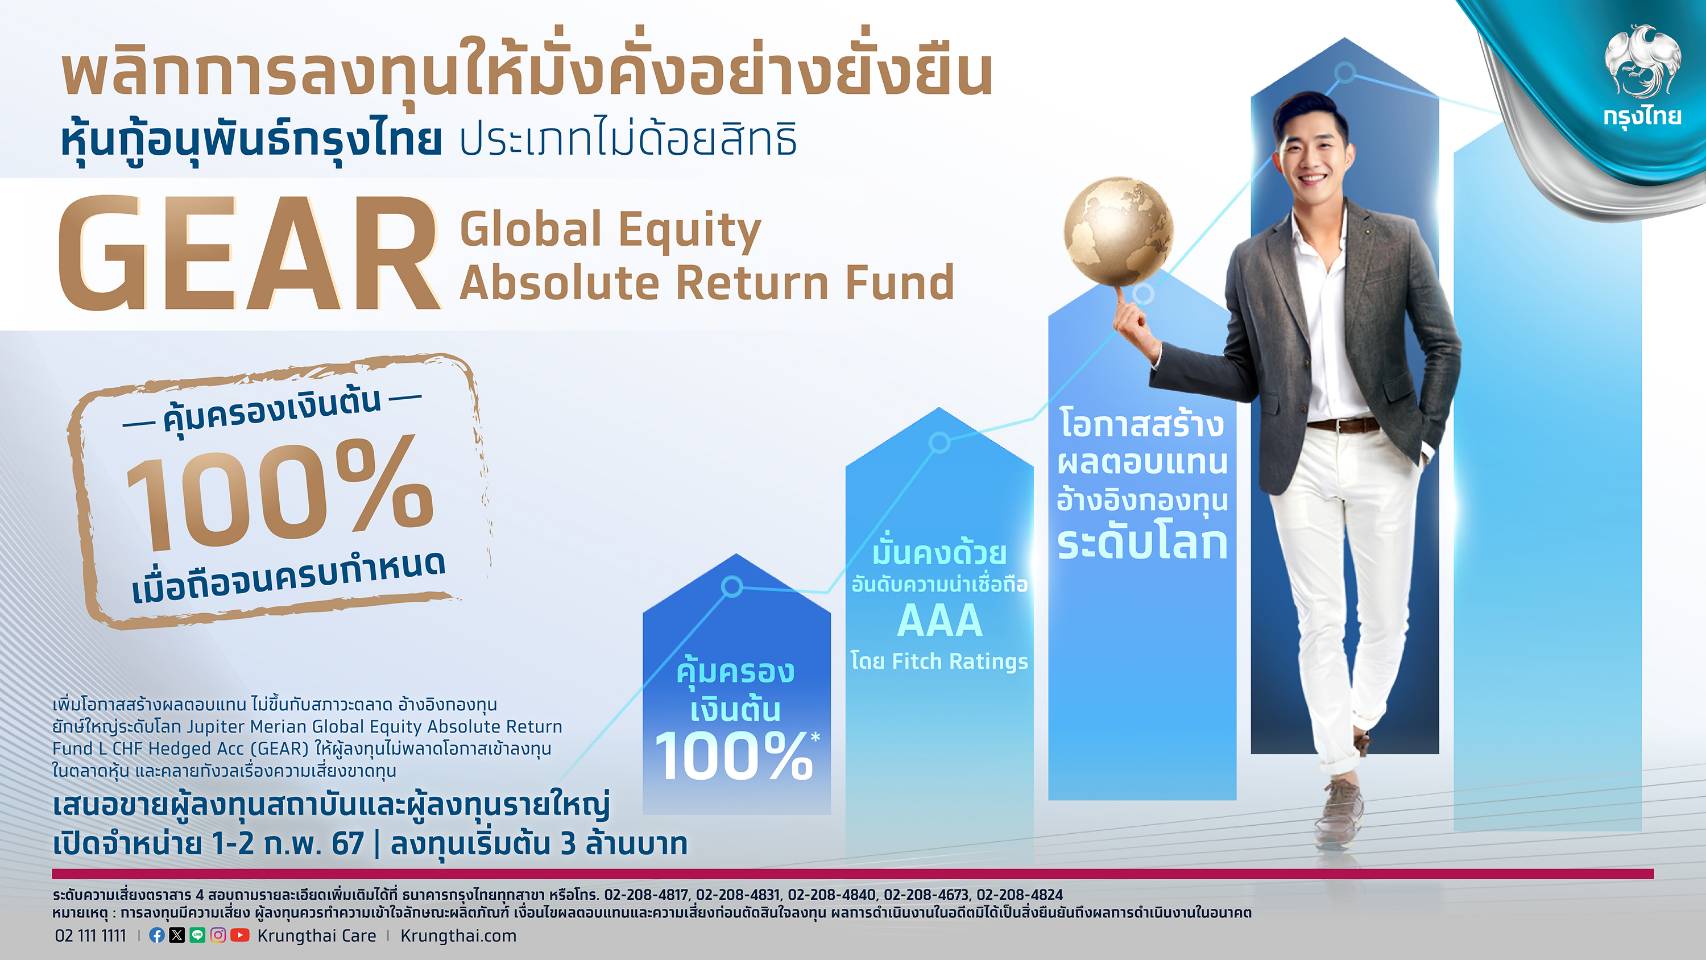 กรุงไทยเสนอขายหุ้นกู้อนุพันธ์กรุงไทย GEAR พลิกการลงทุนให้ง่ายและงอกเงย คุ้มครองเงินต้น 100% รับผลตอบแทนตามหุ้นทั่วโลก เปิดจองซื้อ1-2 ก.พ. 67